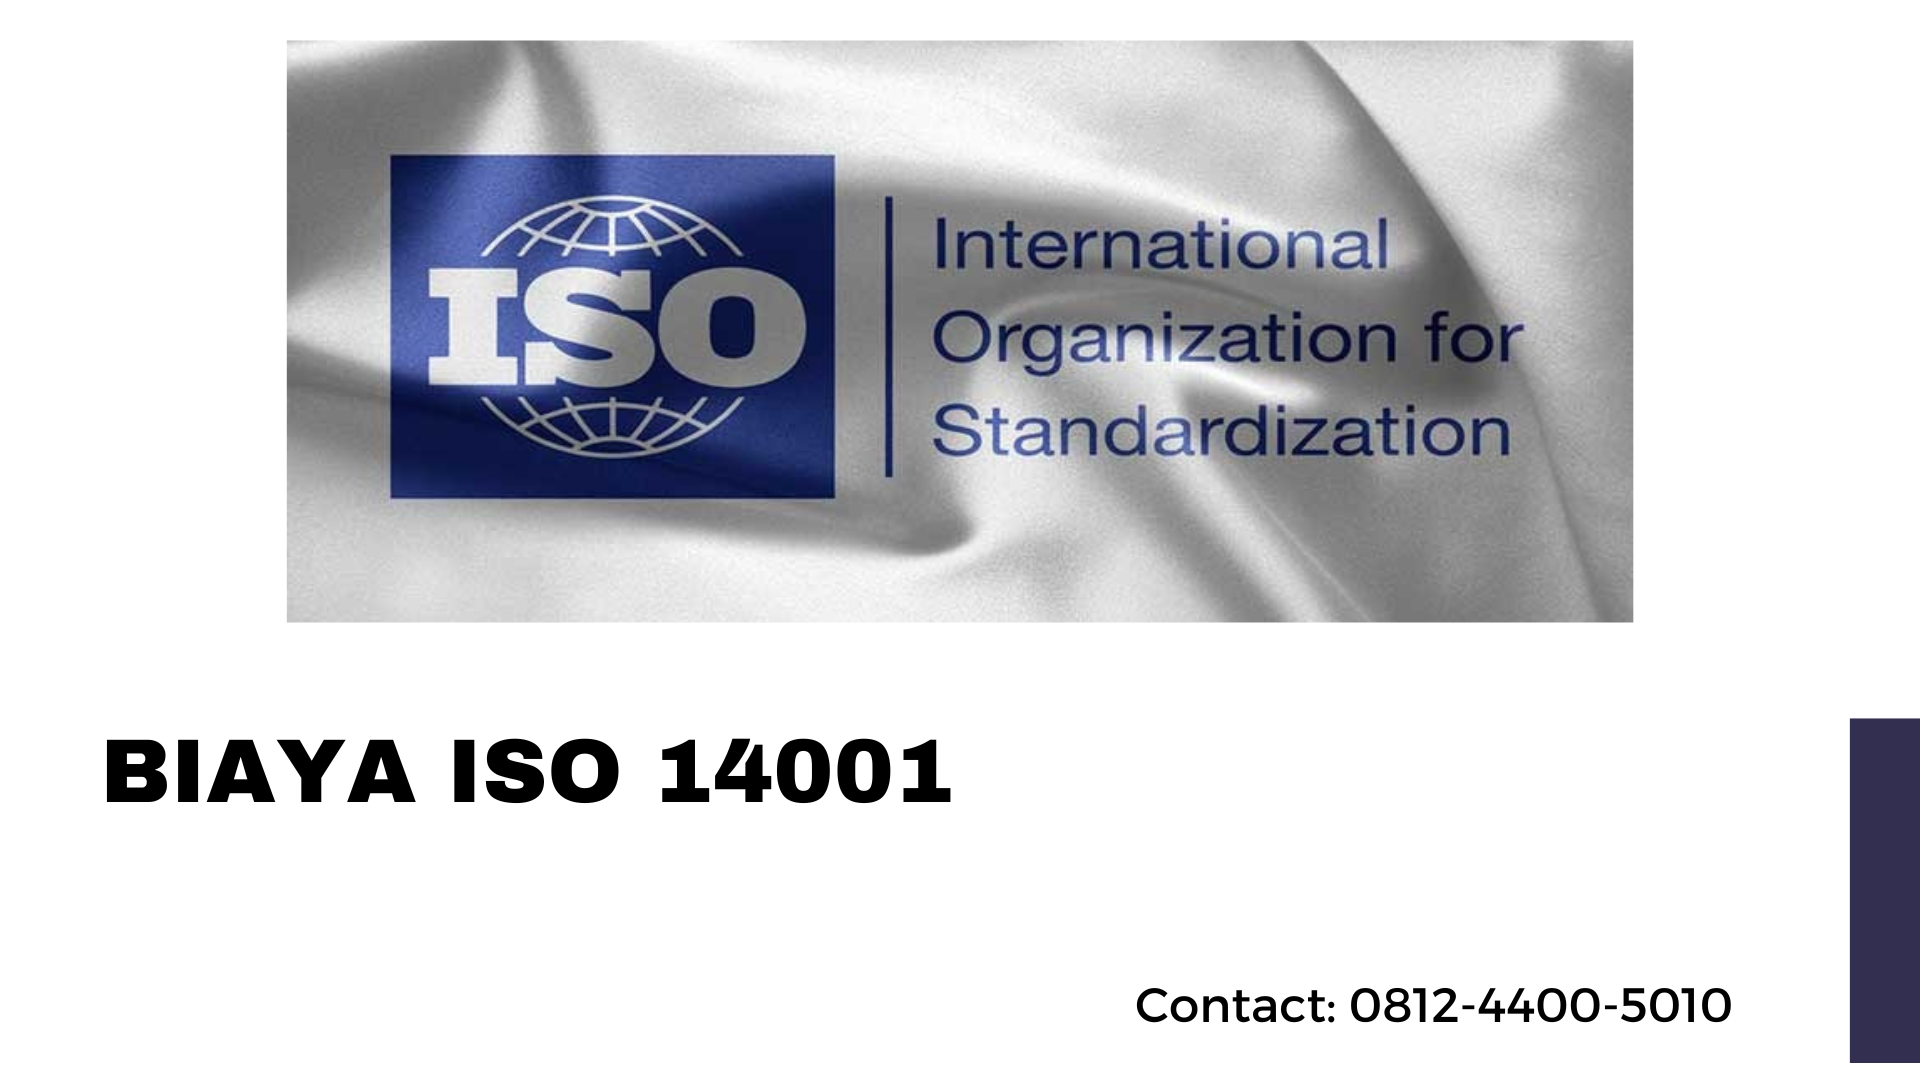 Biaya ISO 14001